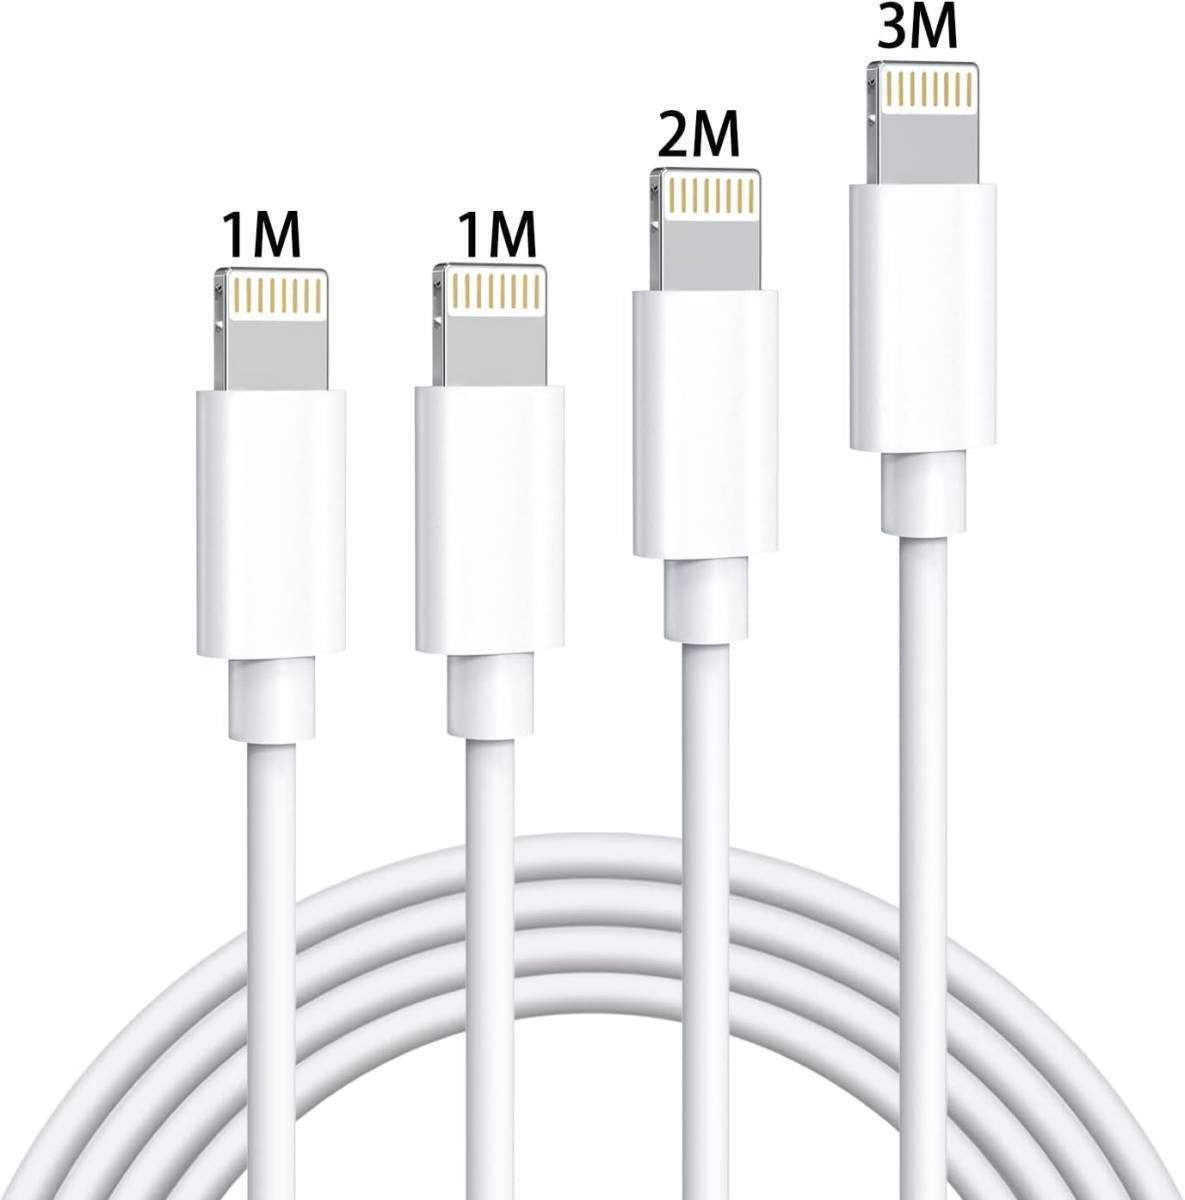 送料無料 iPhone 充電ケーブル 純正 (1m+1m+2m+3m) 4本セット ケーブル 急速充電 アイホン充電ケーブル 充電コード 超高耐久 新品 未使用 の画像3